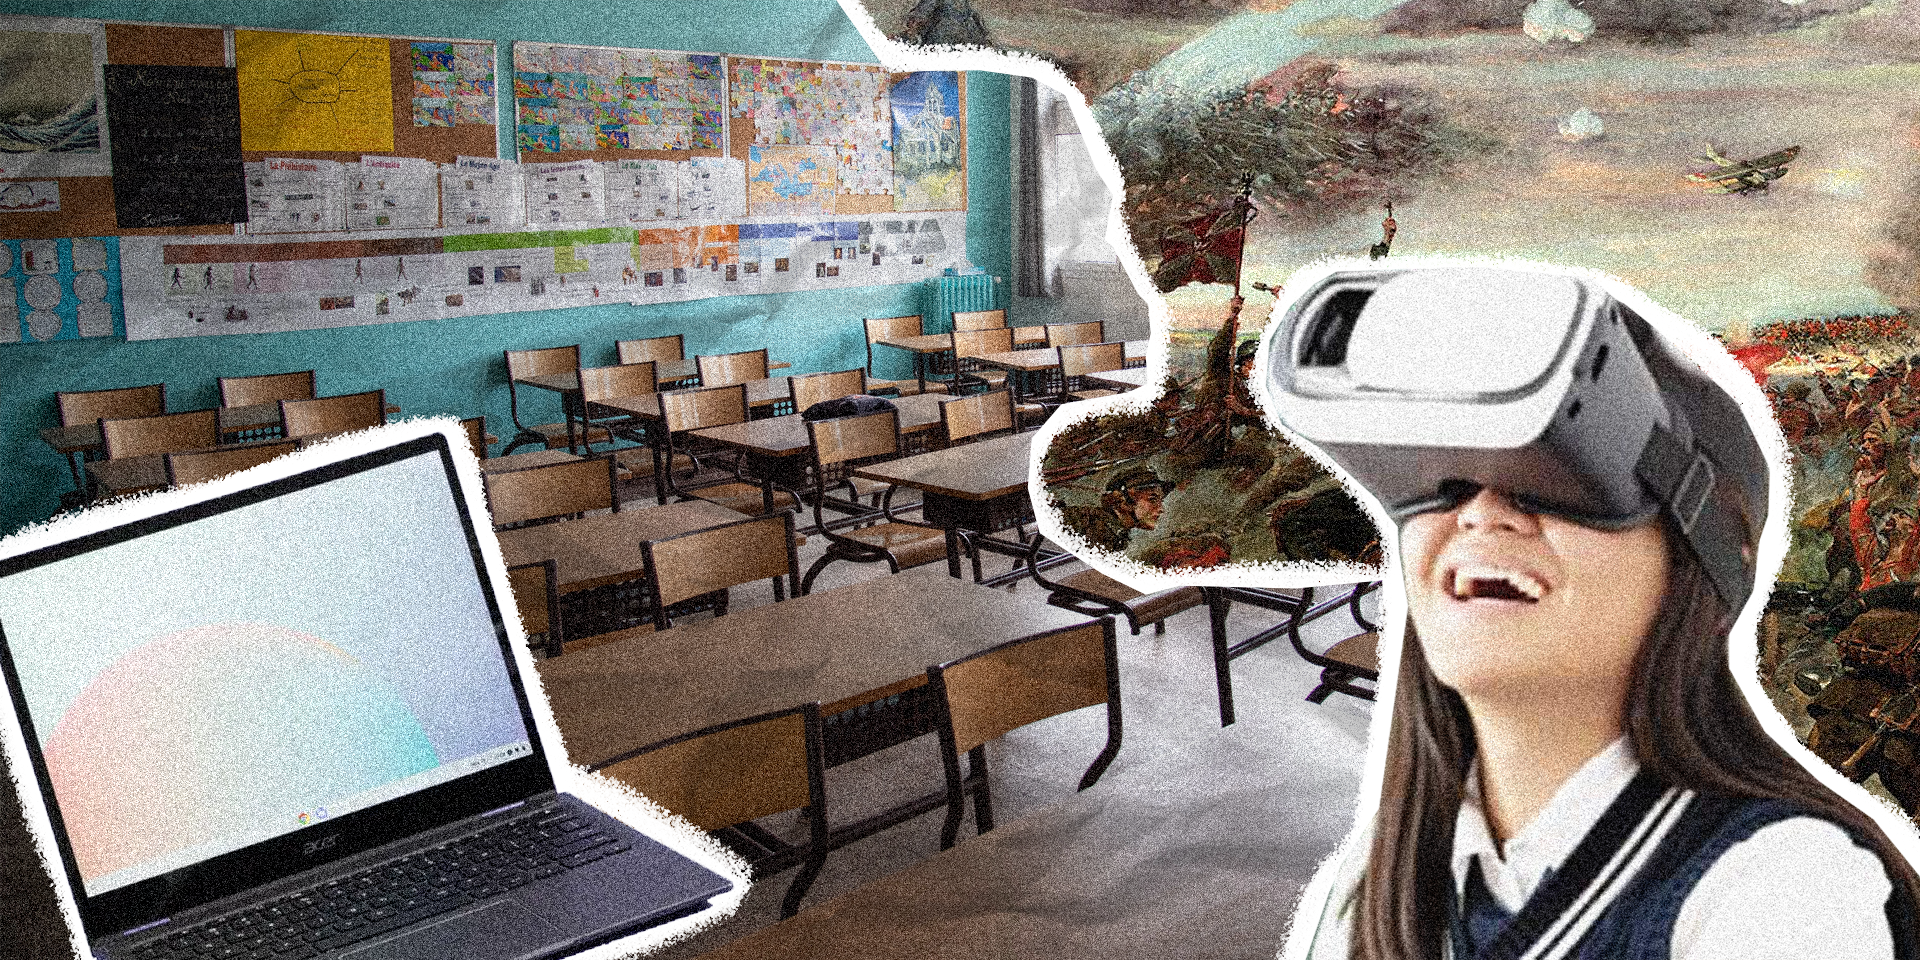 Безплатні ноутбуки, заняття з бізнесу, електронний учнівський квиток та VR: що чекає на учнів польських шкіл у новому 2023/2024 навчальному році?